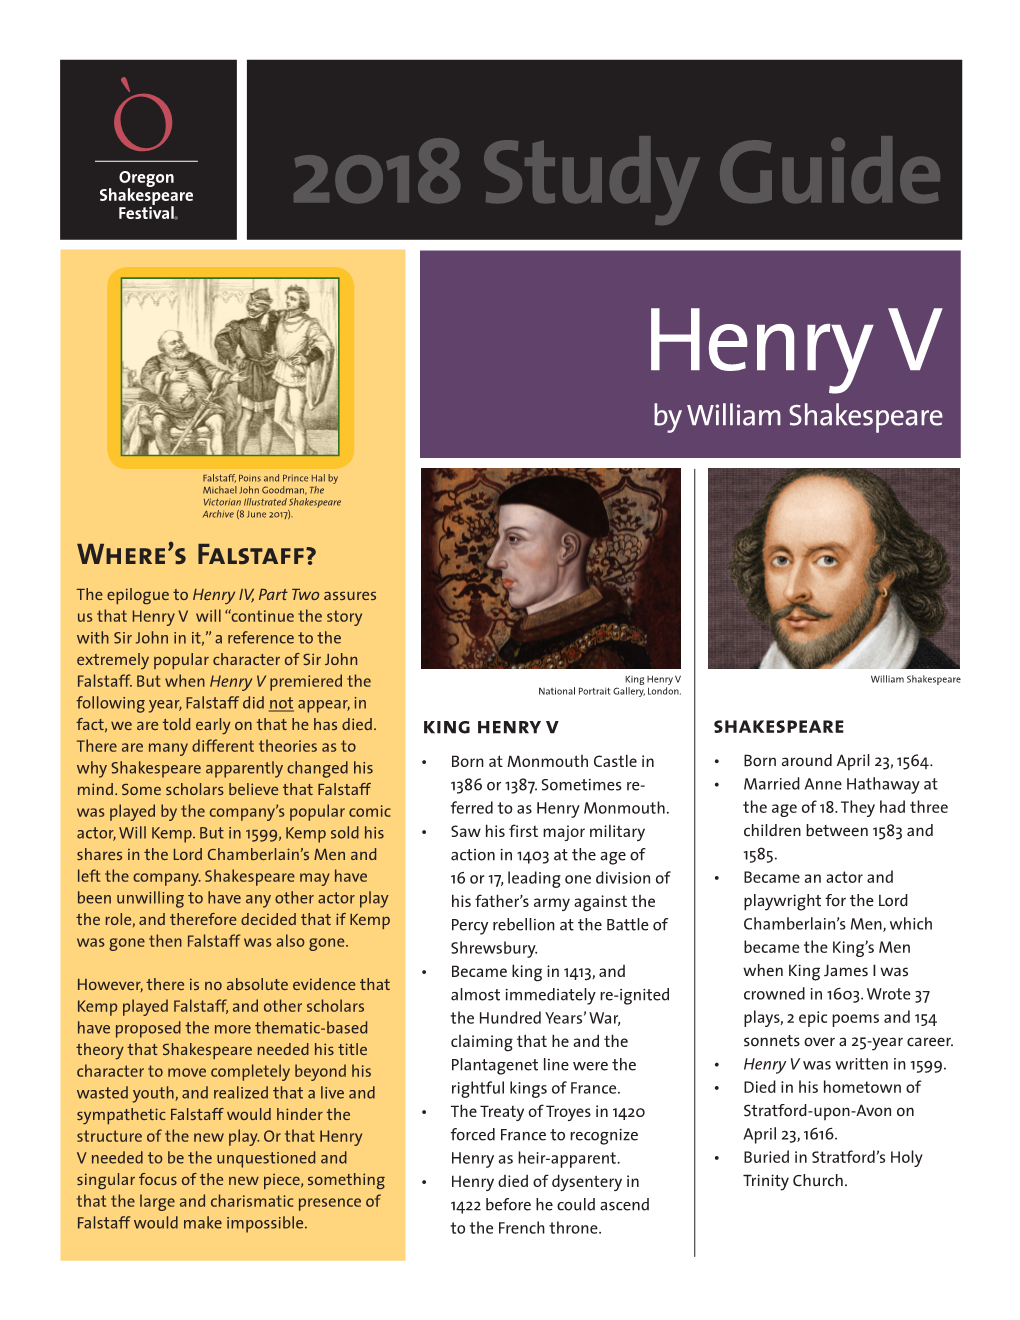 2018 Study Guide Henry V